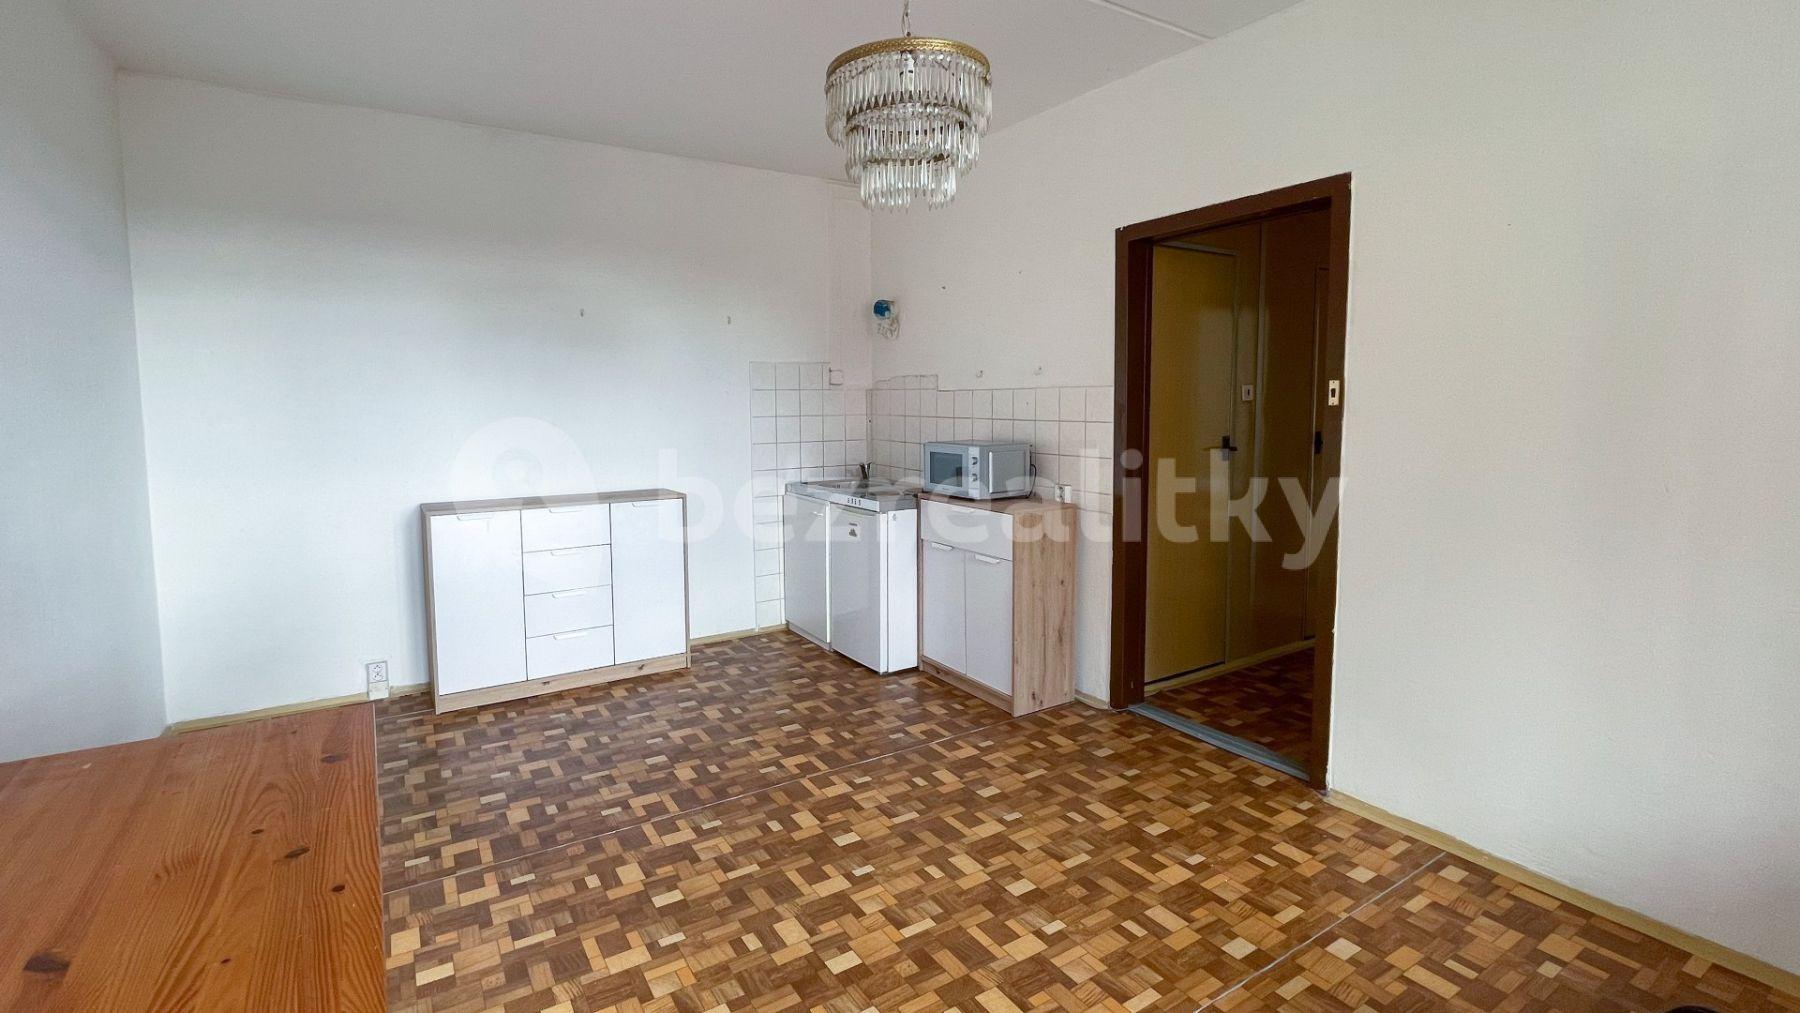 1 bedroom with open-plan kitchen flat for sale, 42 m², M. Chlajna, České Budějovice, Jihočeský Region